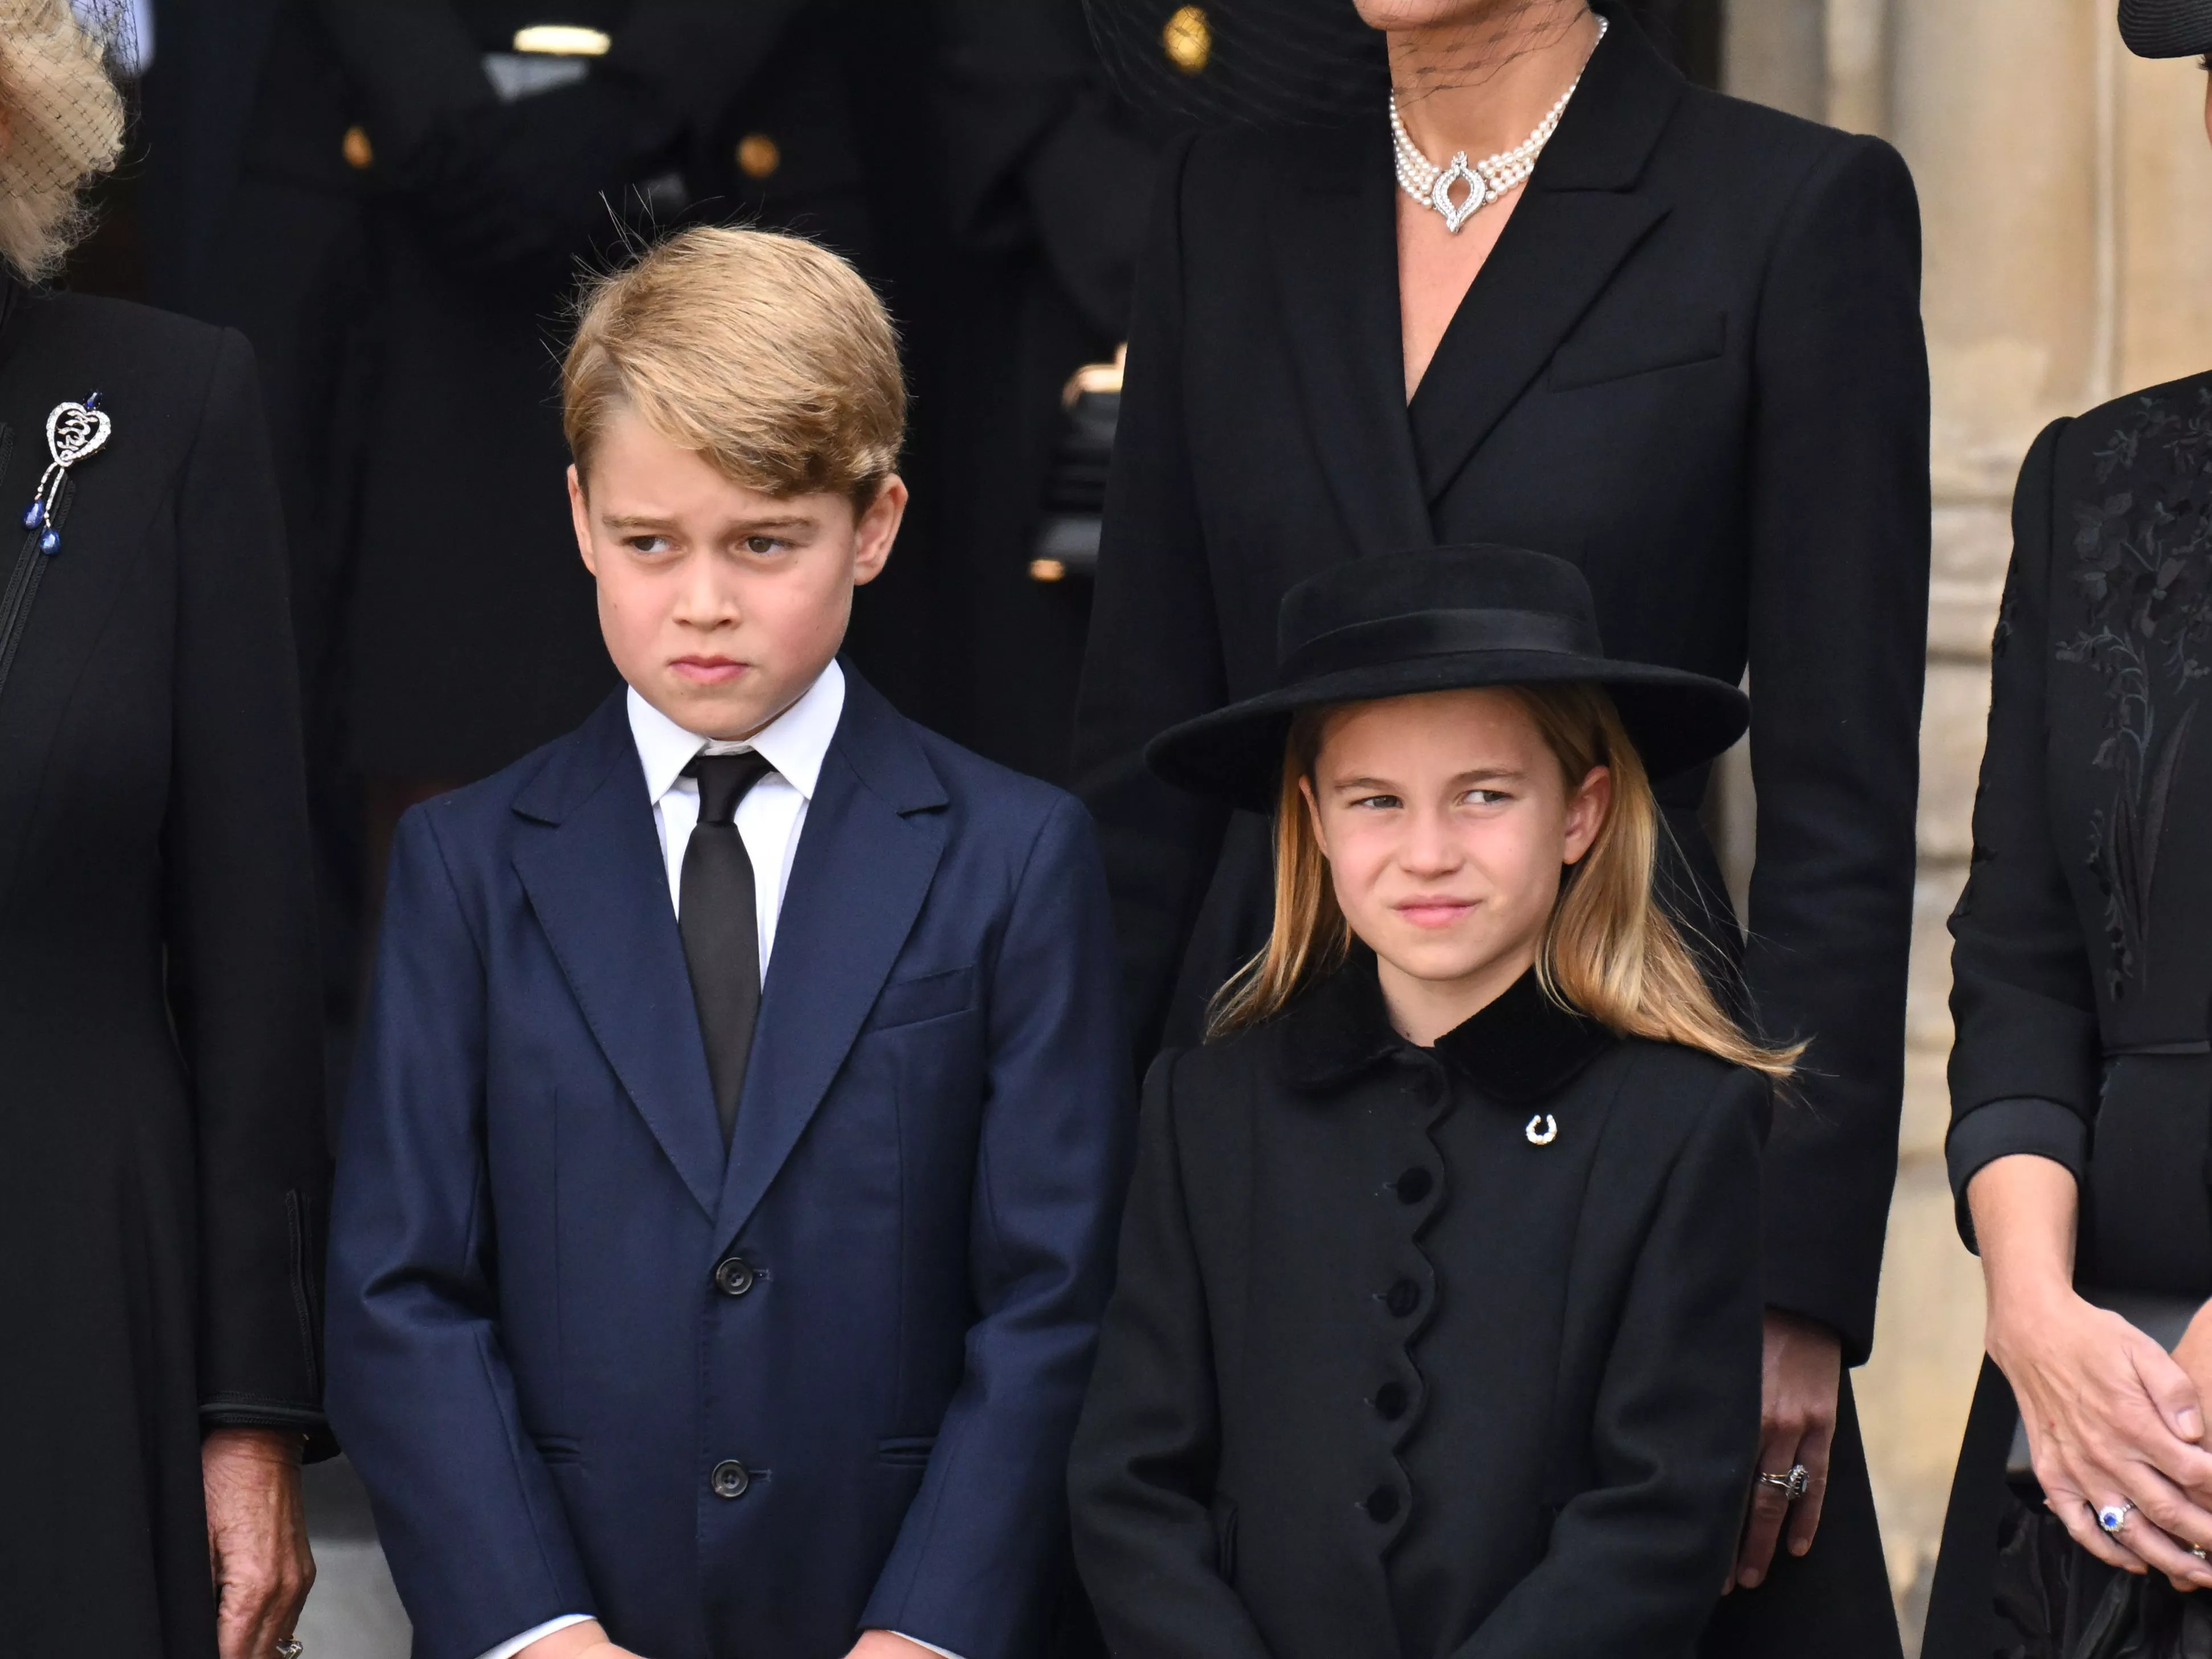 الأمير جورج لزميله في المدرسة: والدي سيكون ملكاً لذا من الأفضل أن تنتبه